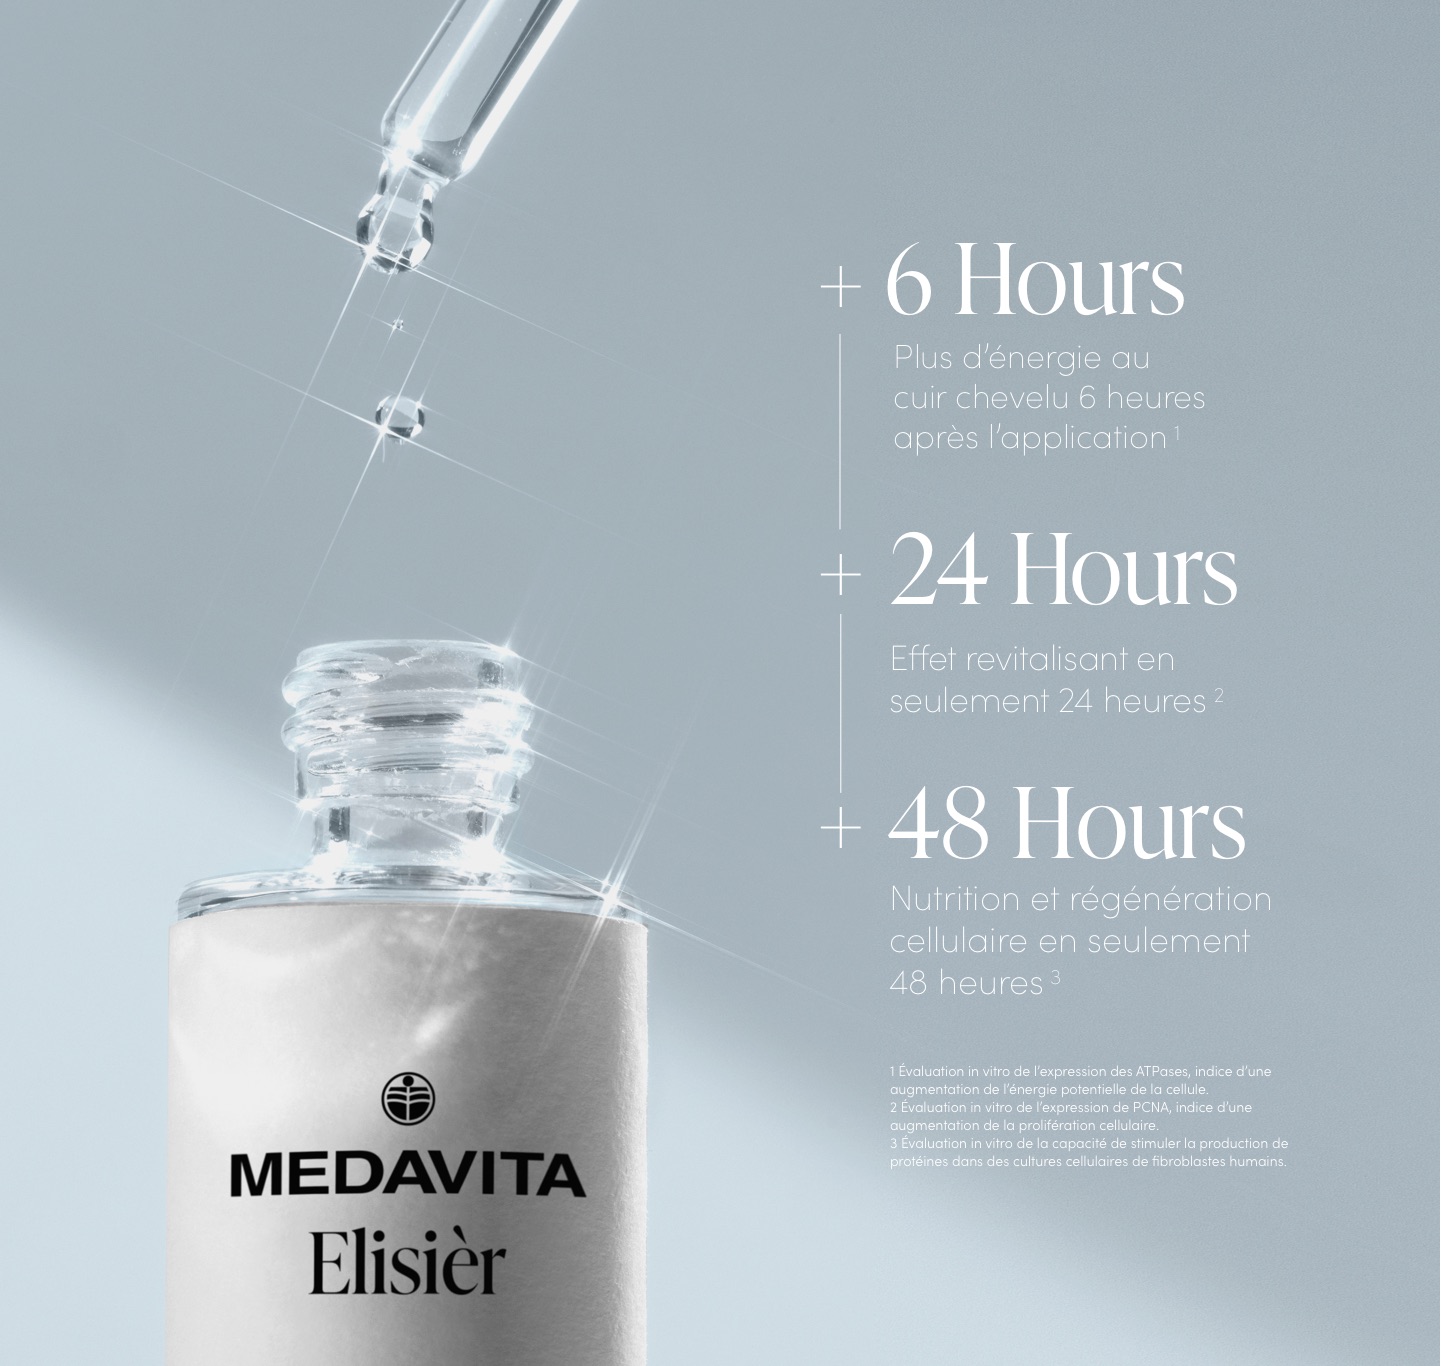 medavita-elisier_hours-FR